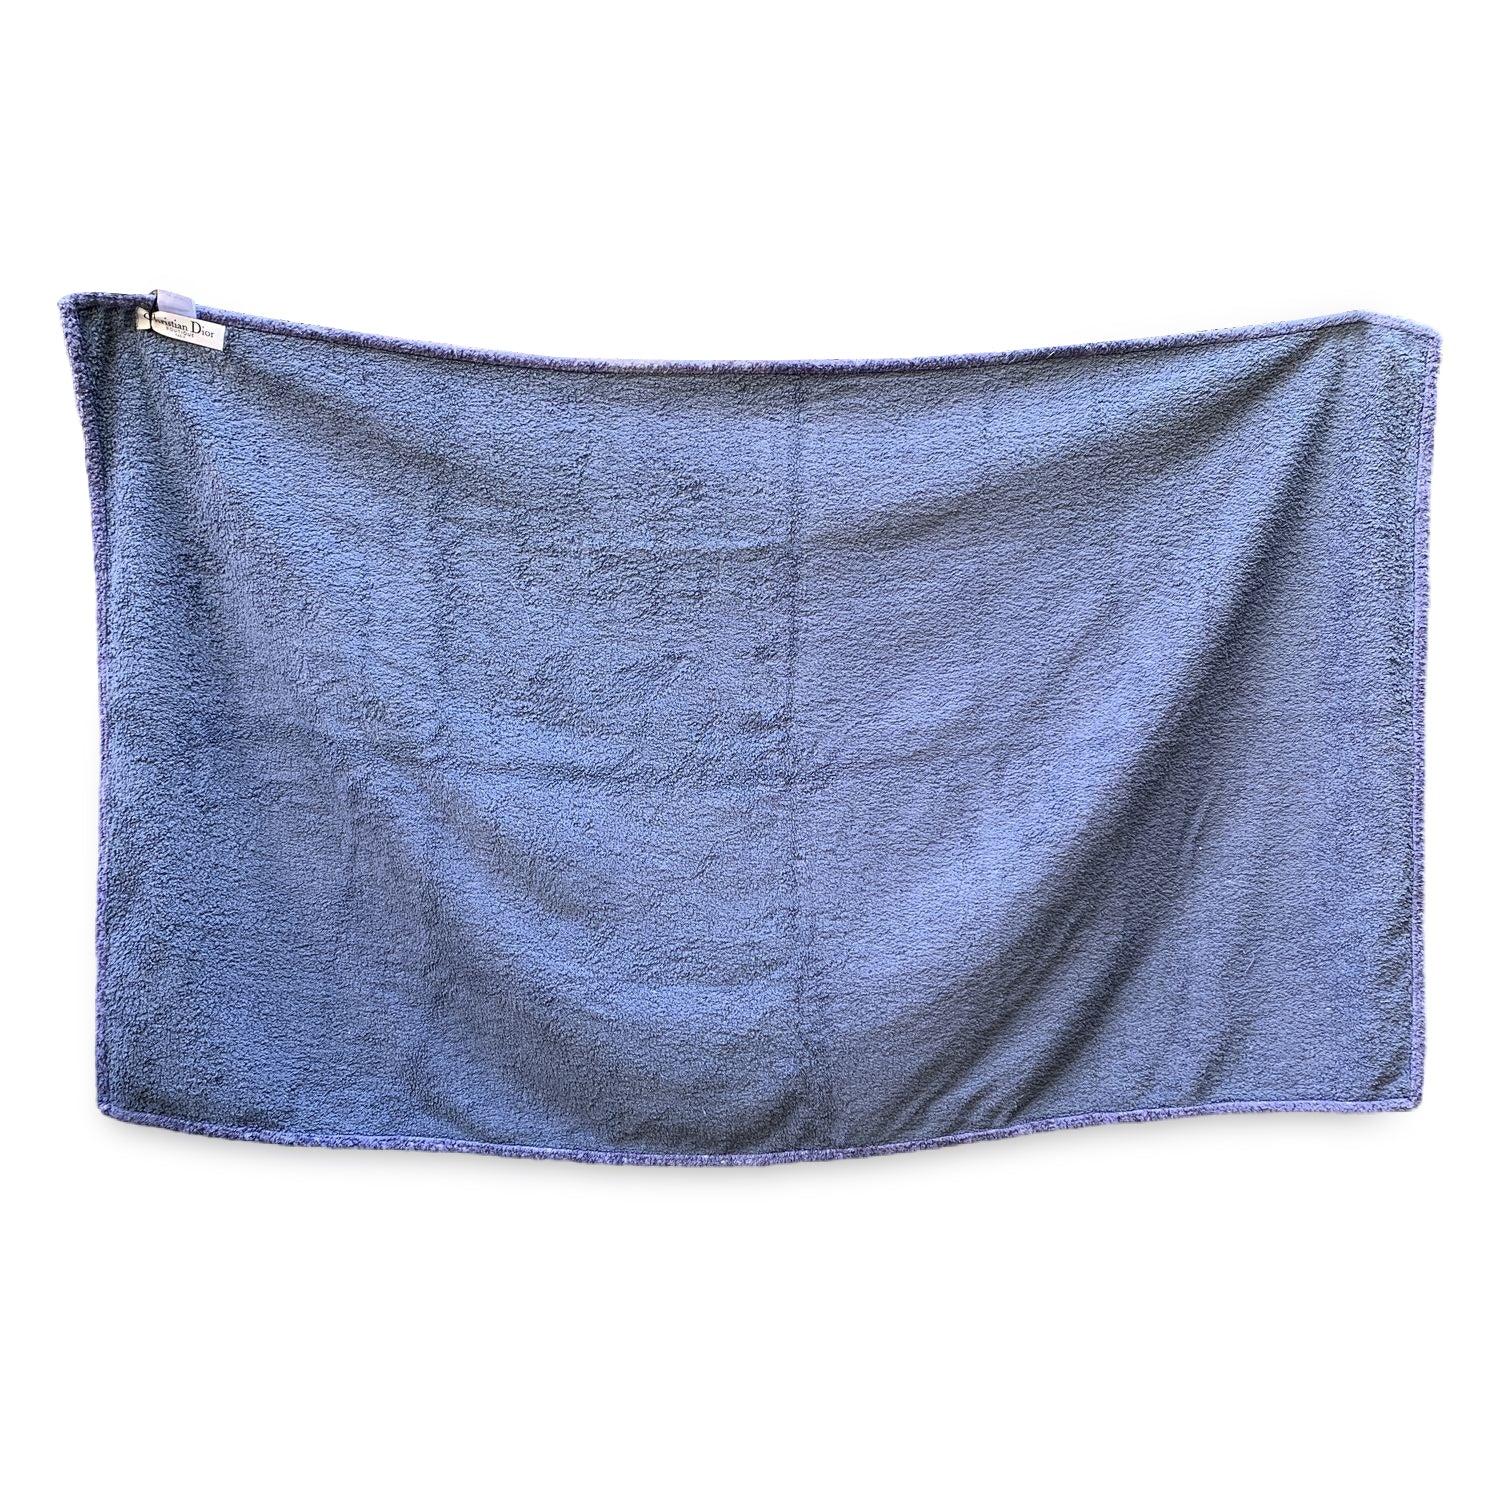 Vintage Christian Dior Terrycloth Cotton Large Beach Towel with Monogram oblique pattern. Couleur bleue. 100% coton. Dimensions : 35 x 60 pouces - 88.8 x 152.4cm. Détails MATERIAL : Coton COULEUR : Bleu MODÈLE : Oblique GENDER : Unisexe Adultes PAYS